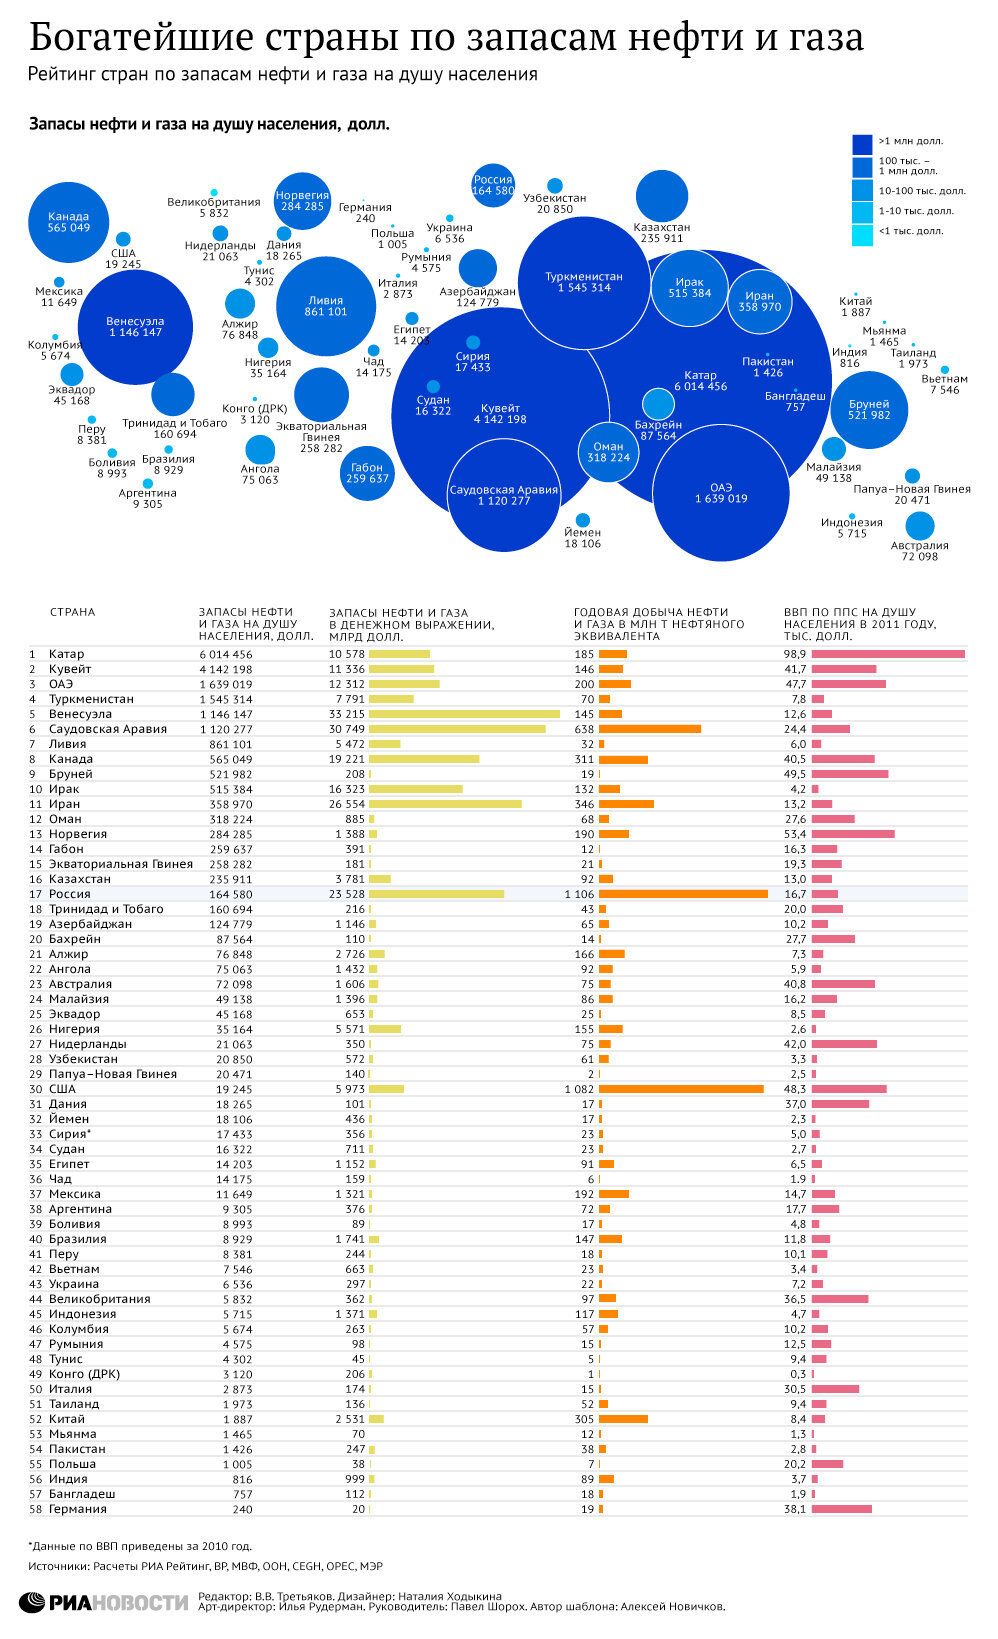 Инфографика Богатейшие страны по запасам нефти и газа